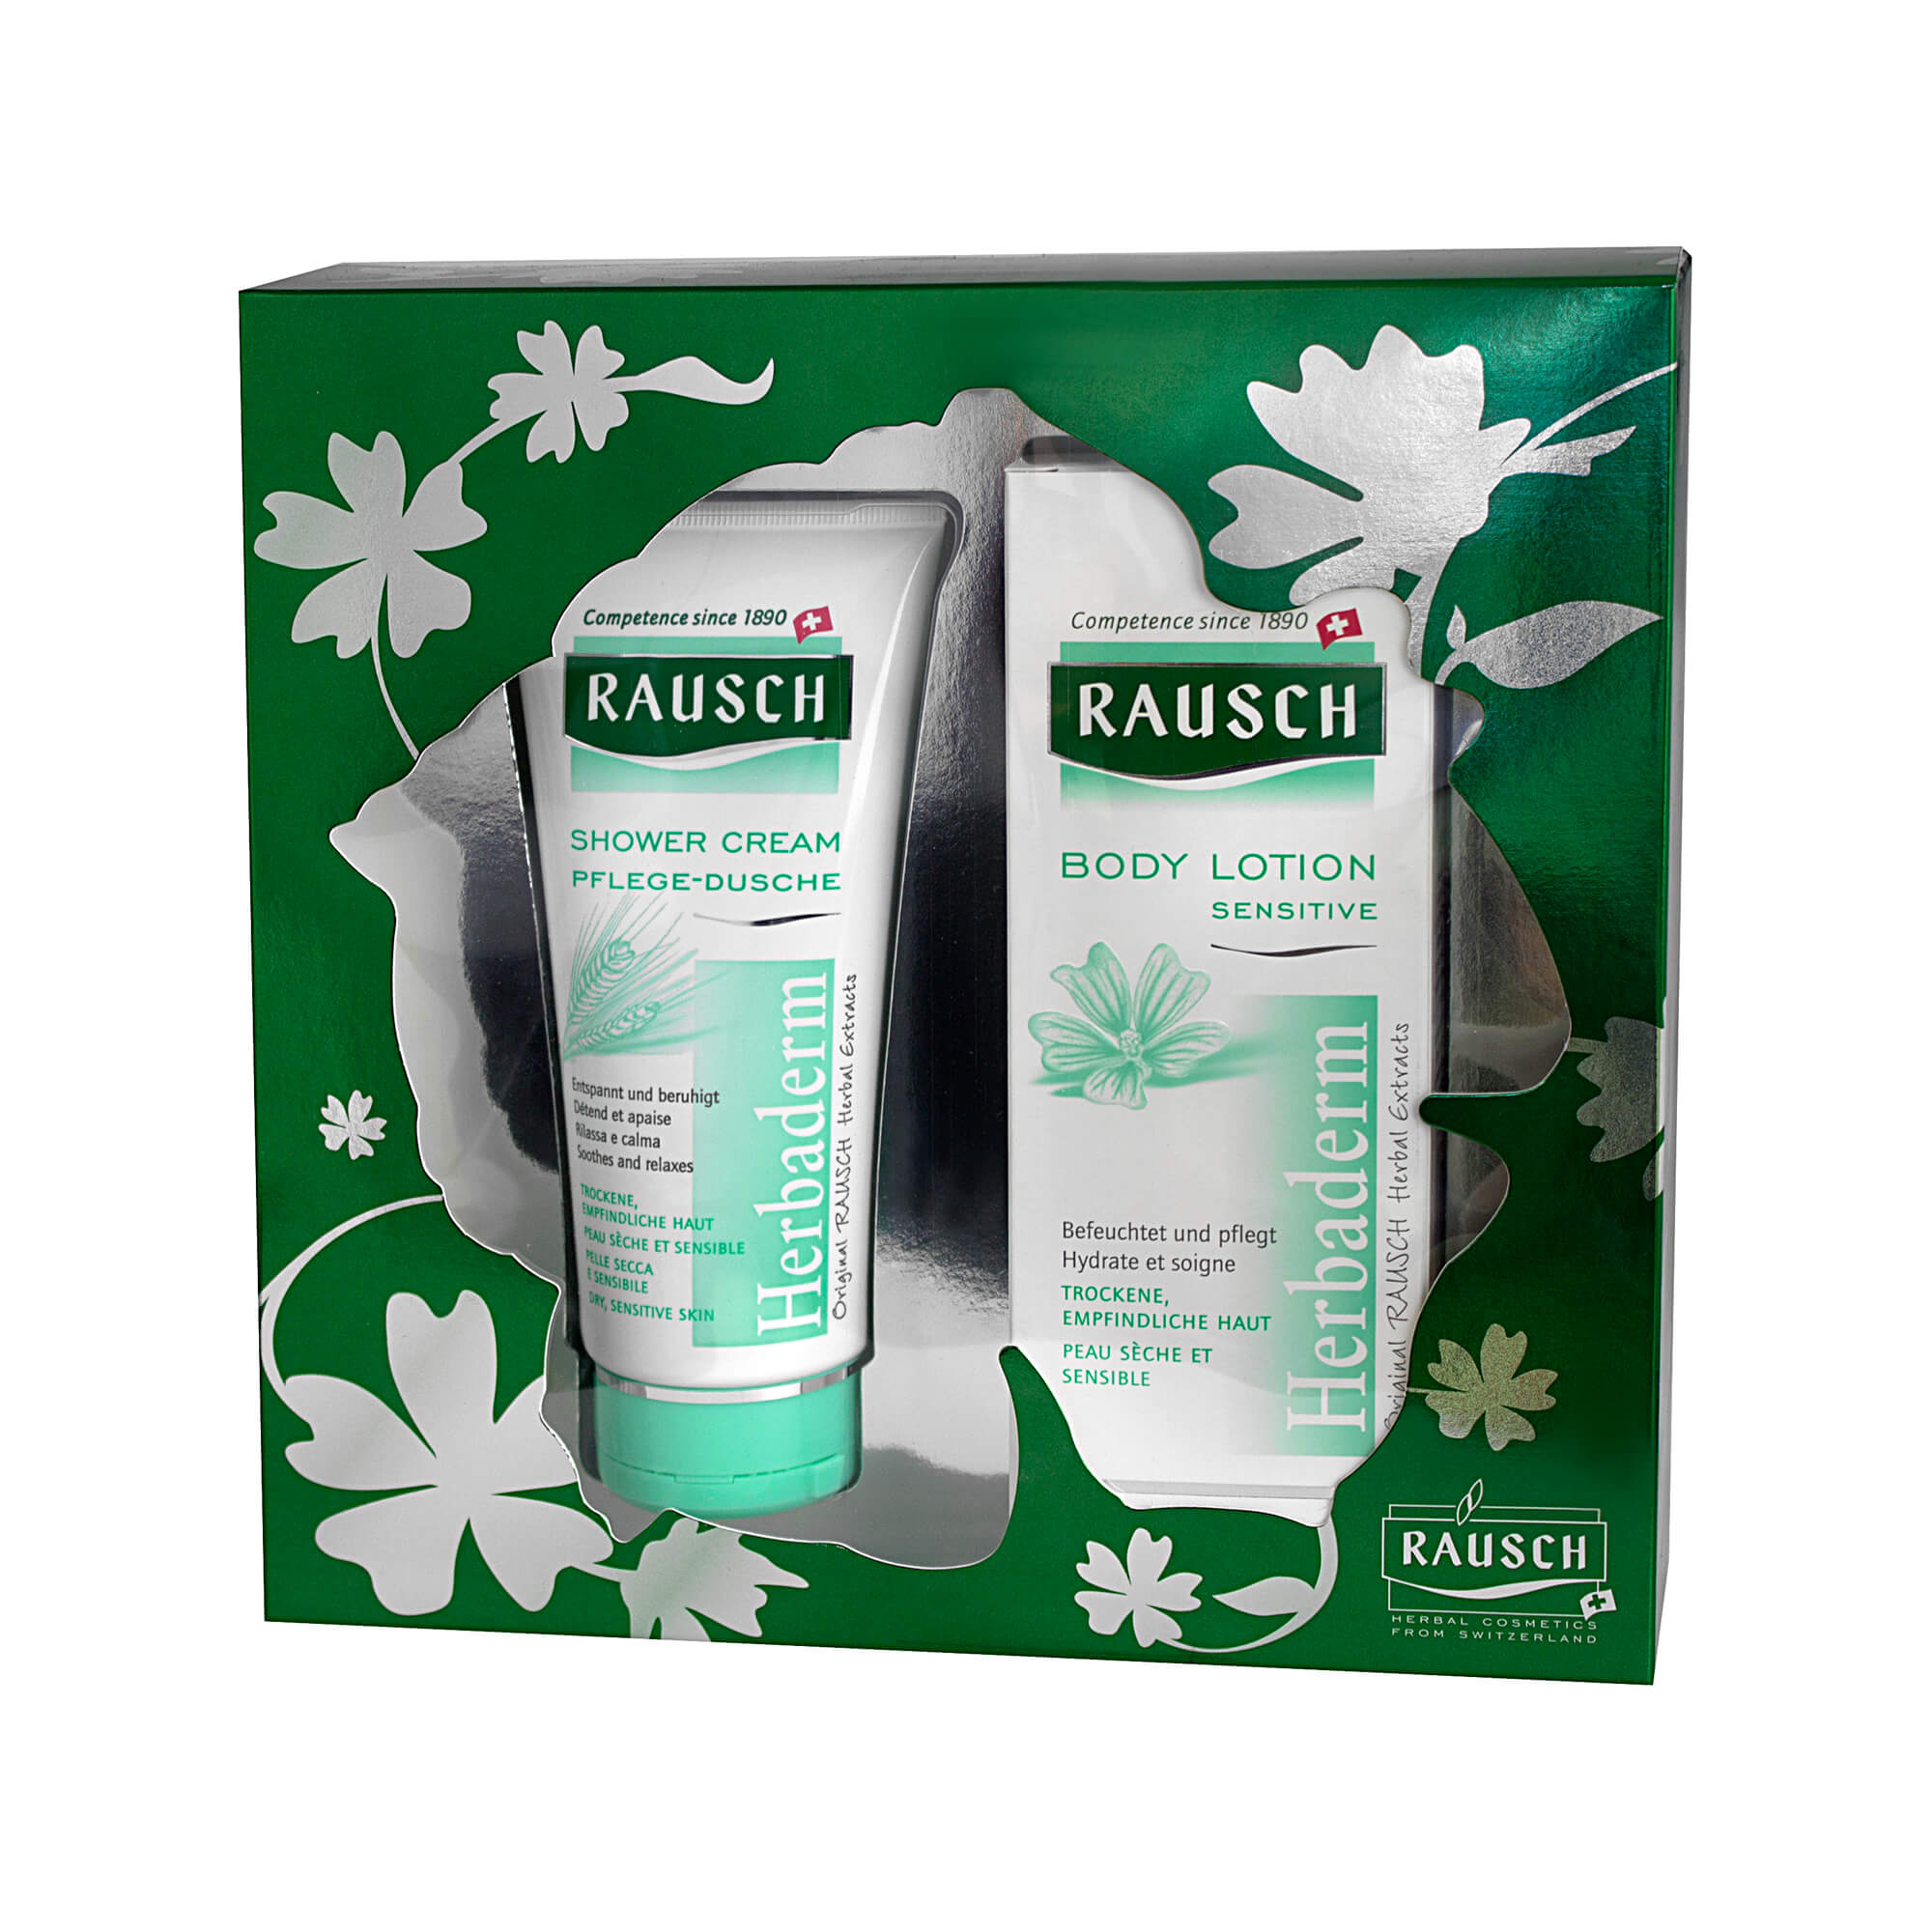 Rausch Body Lotion Sensitive + Rausch Shower Cream Pflege-Dusche